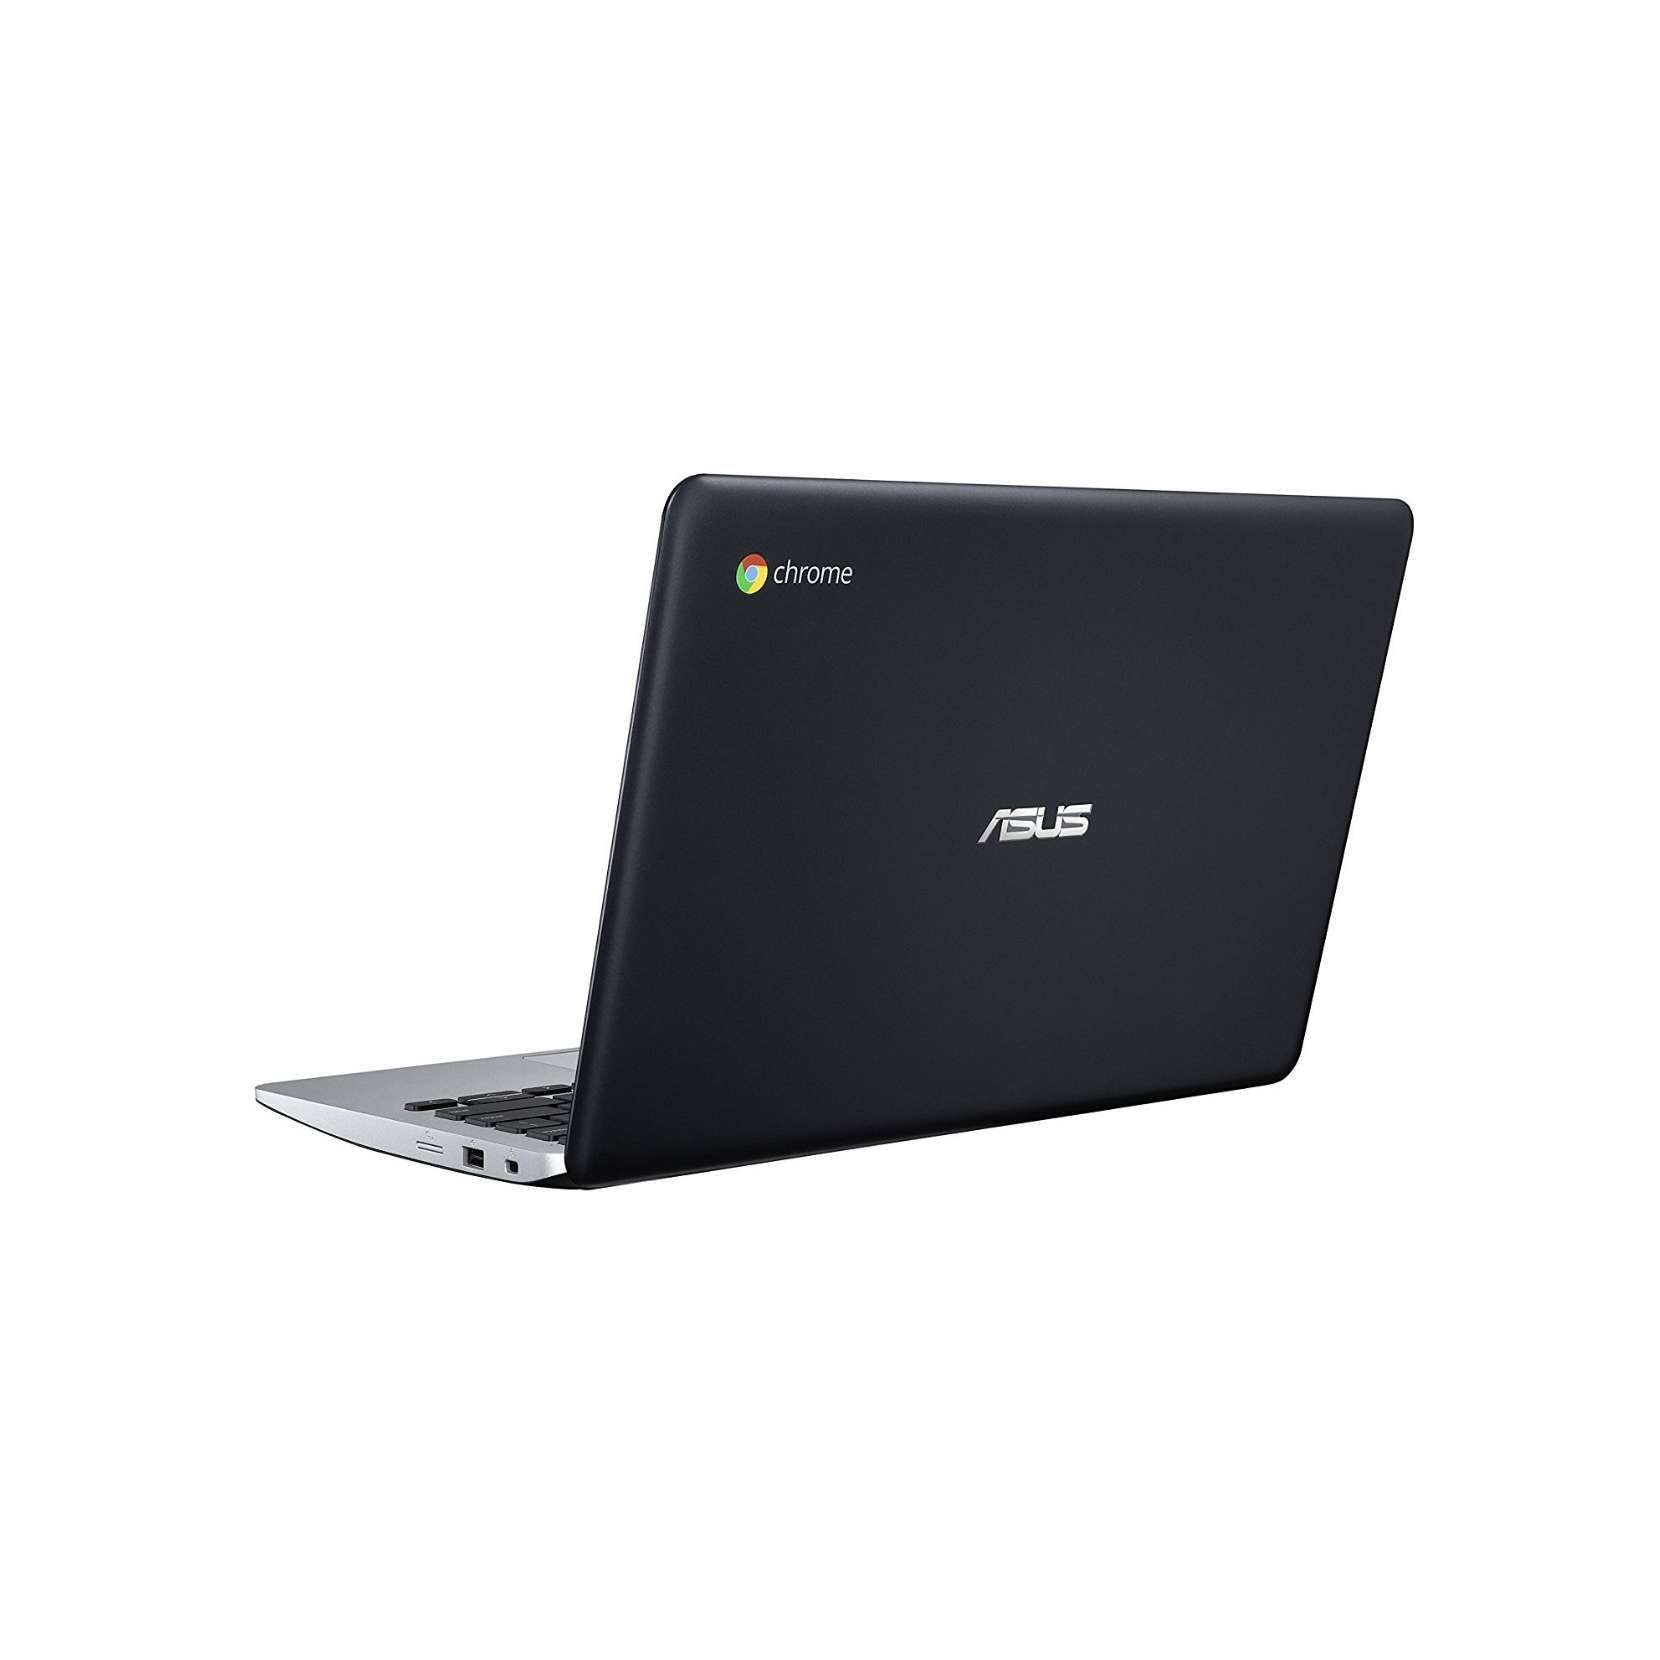 ASUS ChromeBook C200M - Chromebook本体